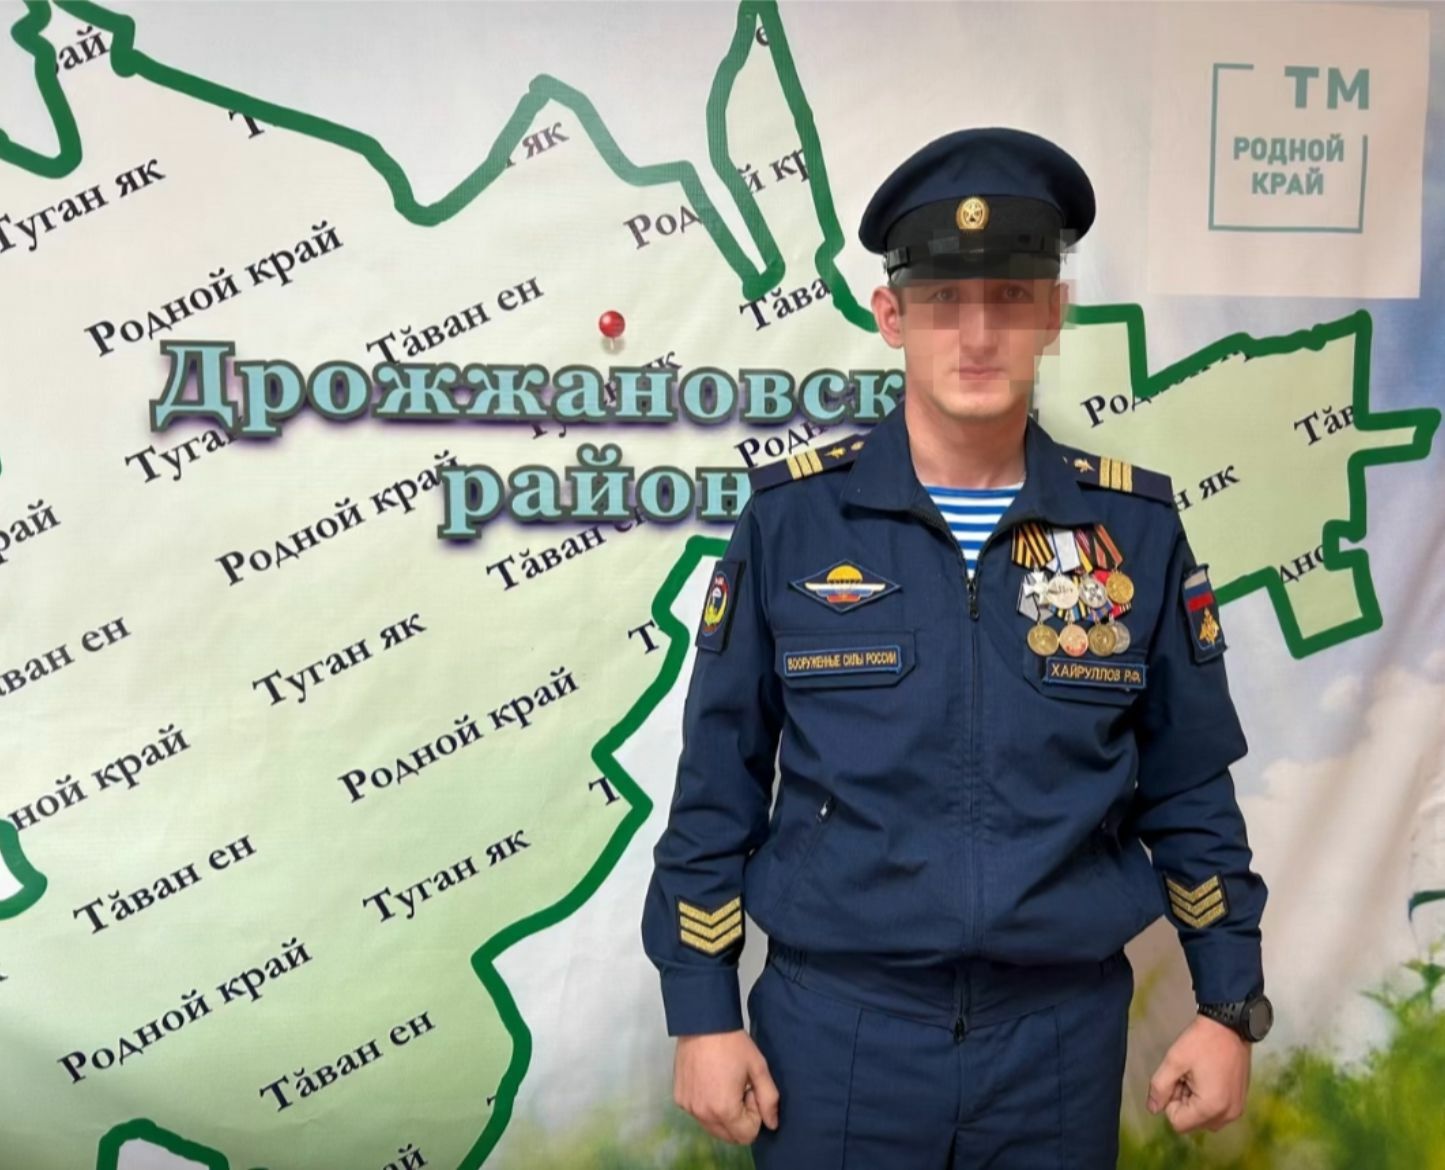 Боец из Татарстана получил Георгиевский крест IV степени и медаль «За отвагу»